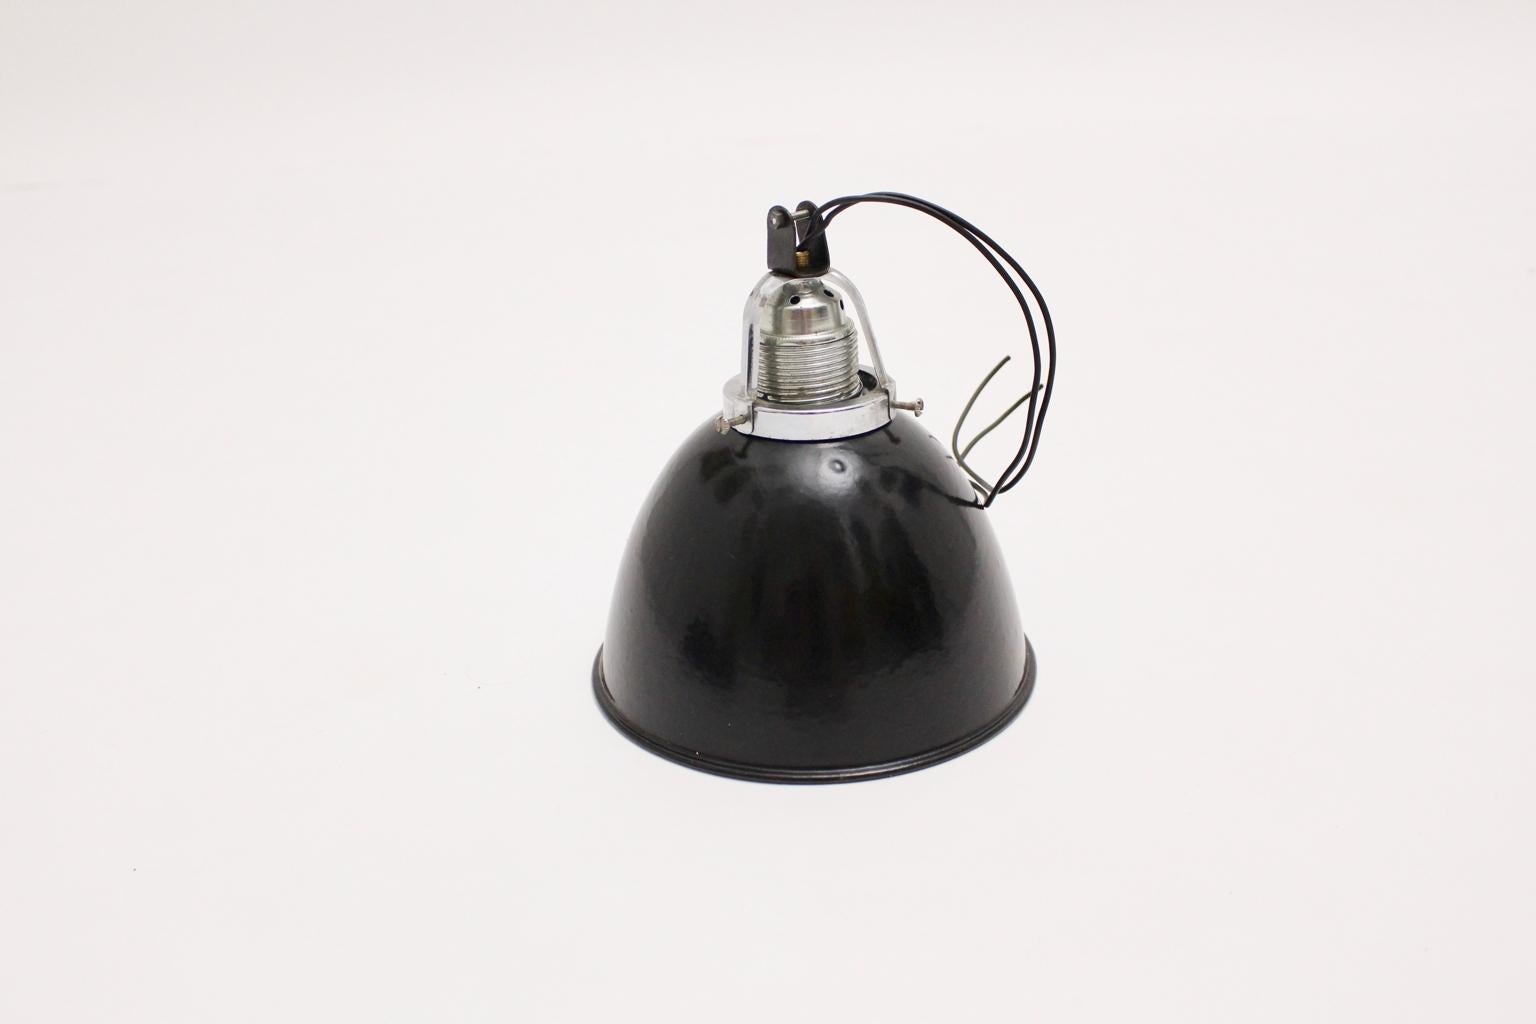 Lampe à suspension vintage Bauhaus en métal émaillé  métal en noir et blanc couleurs années 1920, Allemagne.
Une suspension simple et sophistiquée composée de métal émaillé, de métal chromé et d'une douille E 27 en porcelaine.

Très bon état avec